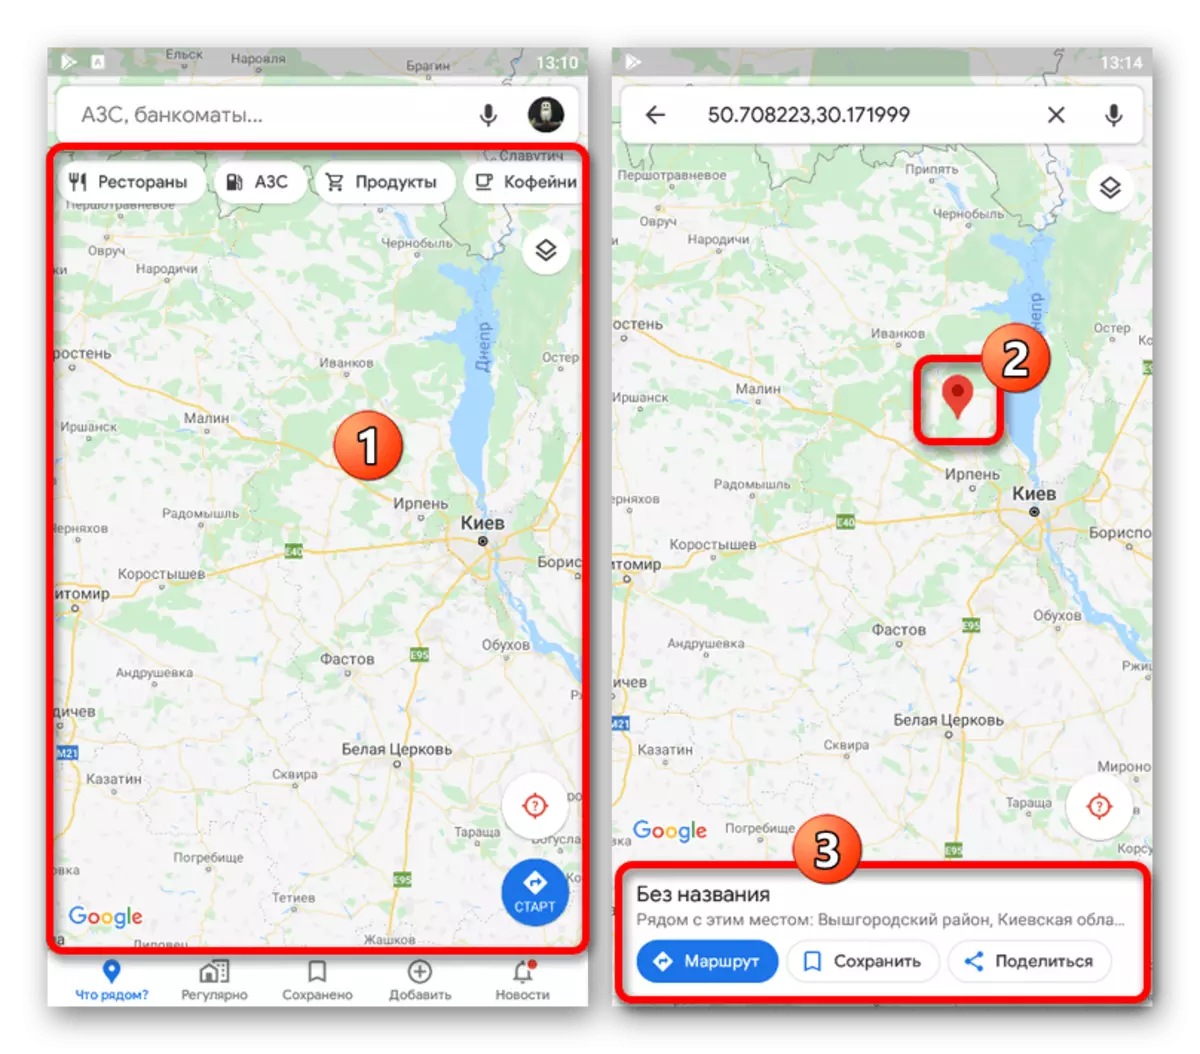 Menambah tanda baru pada peta dalam aplikasi Google Maps